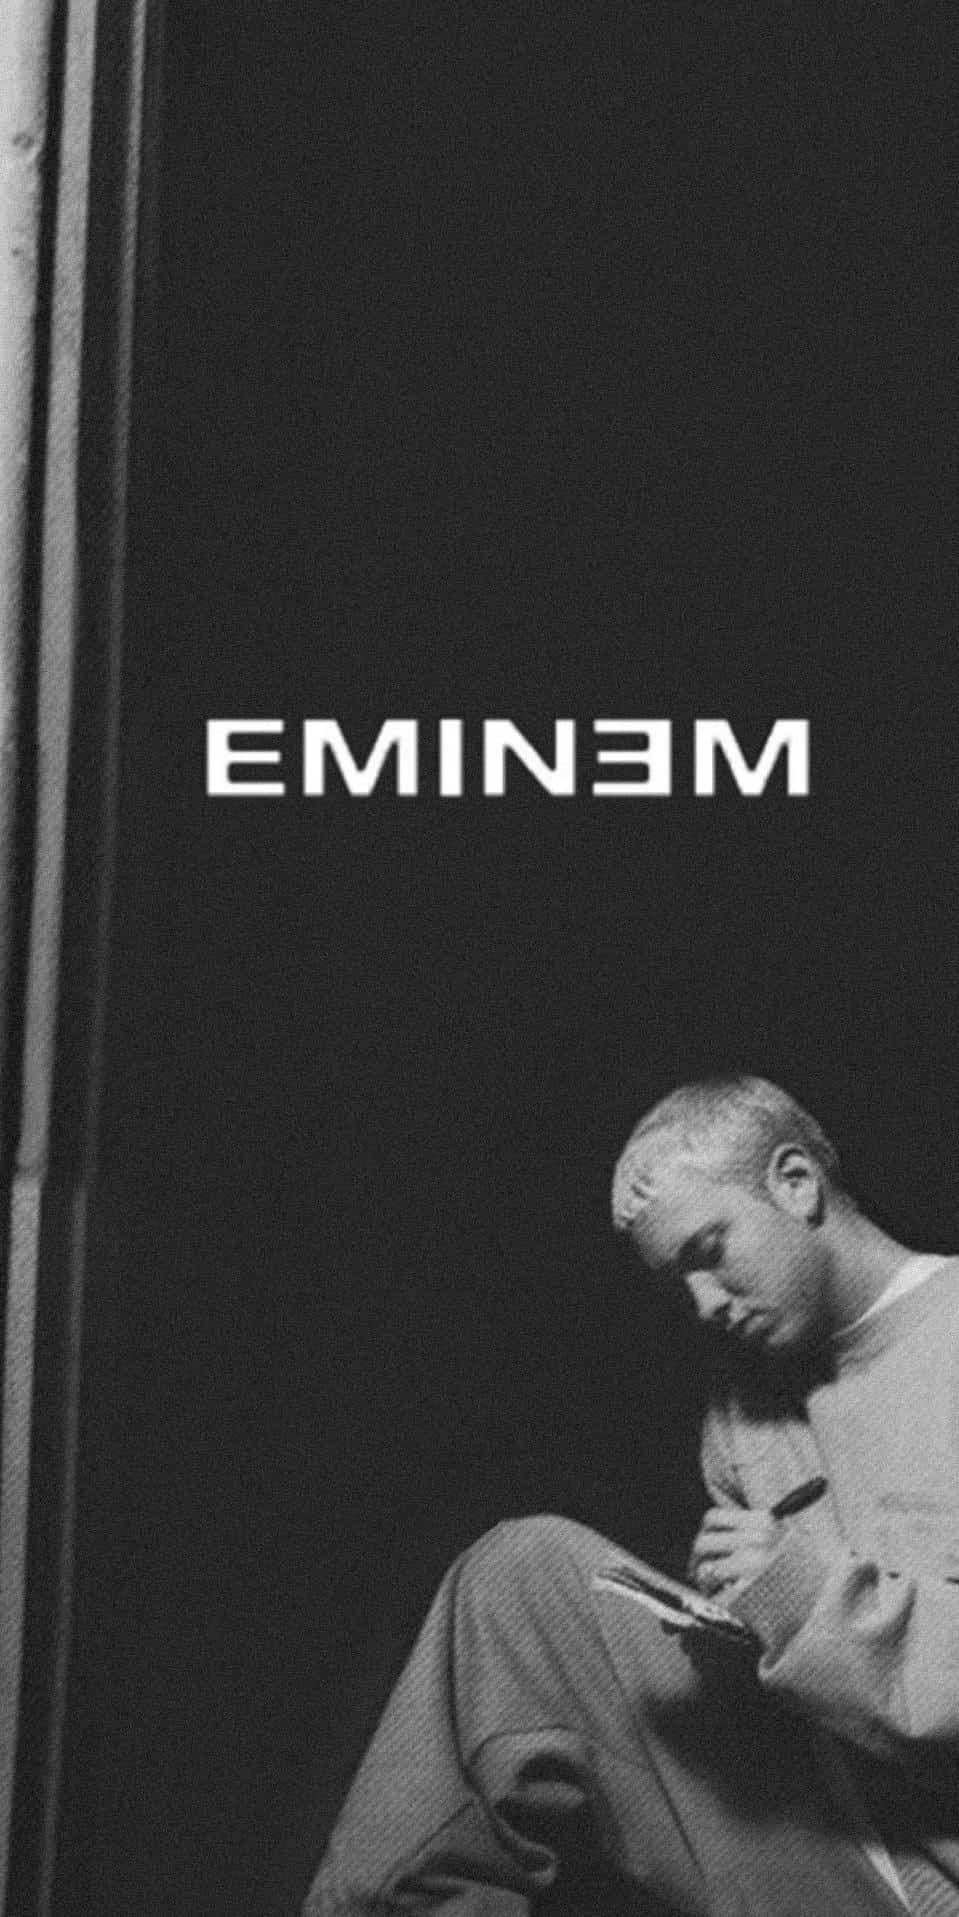 Eminem, the Rap God, performing live on stage